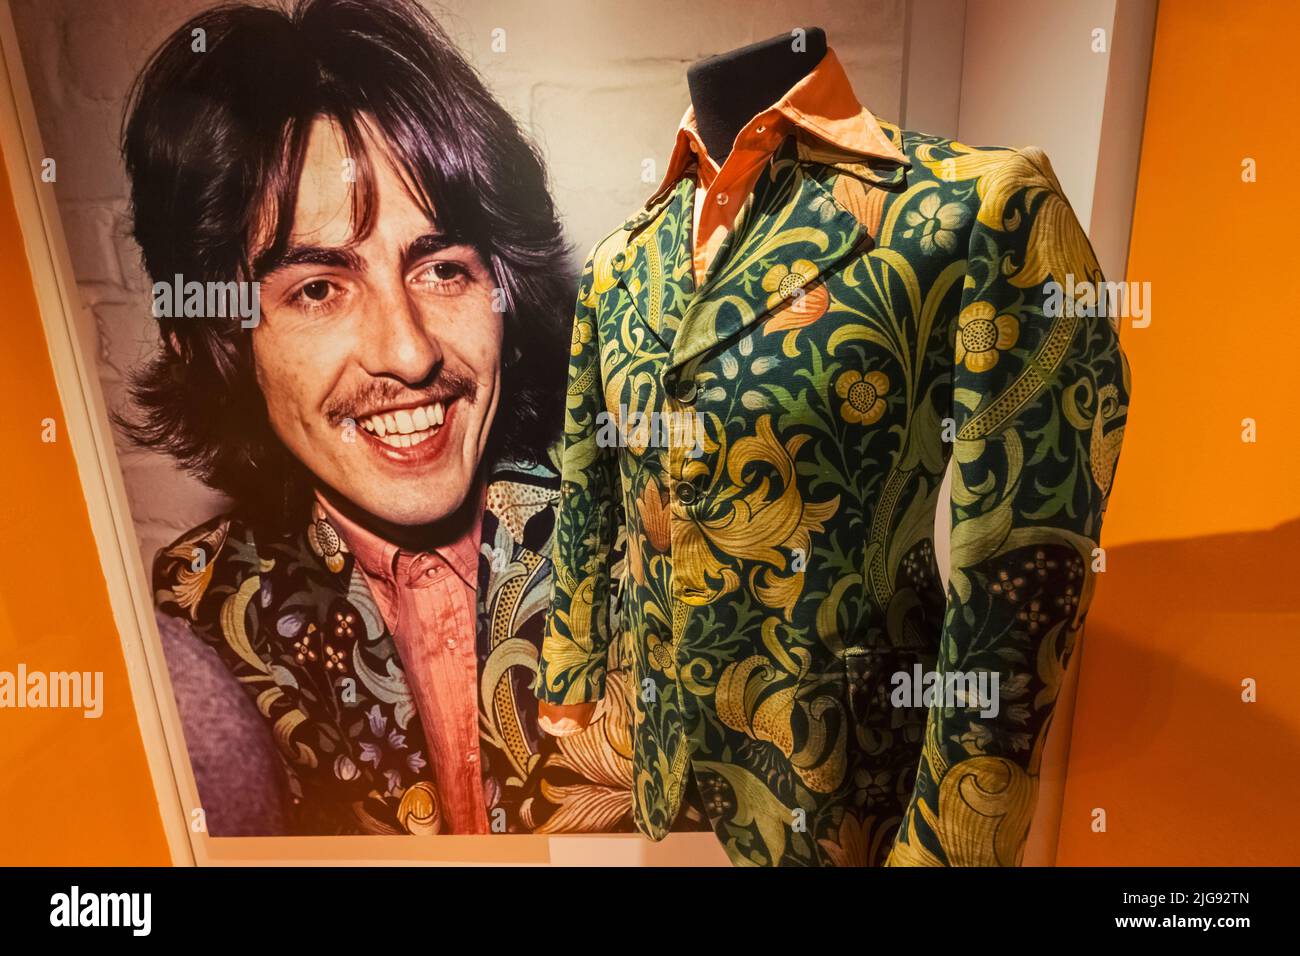 Angleterre, Londres, Southwark, Bermondsey, Musée de la mode et du textile, exposition de la veste des années 1960 portée par George Harrison des Beatles Banque D'Images